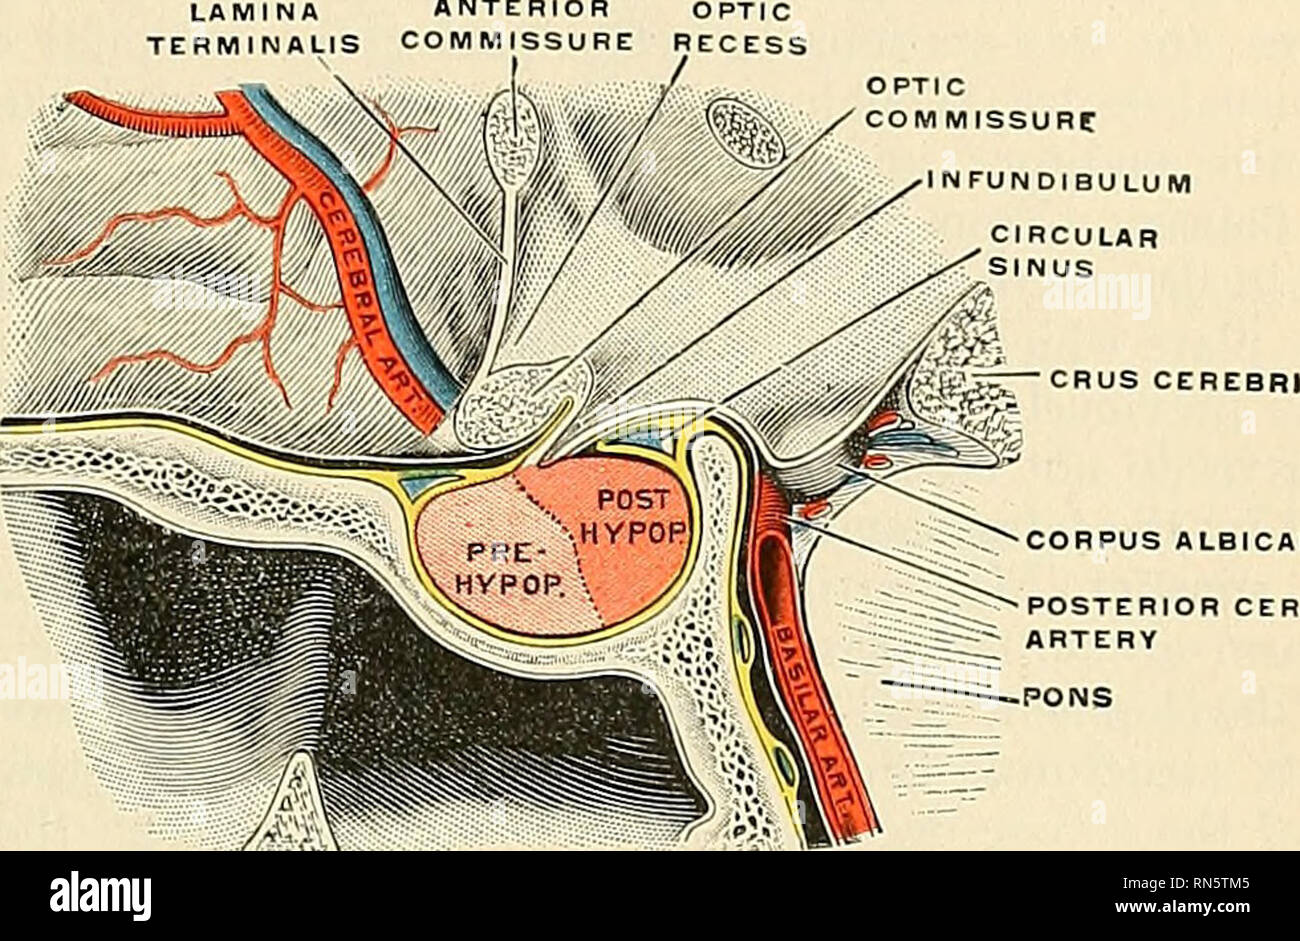 Anatomia, descrittivo e applicata. Anatomia. Parti derivate dalla  ribalta-cervello 909 il corpo della ghiandola pituitaria o ipofisi^ è una  struttura di duplice origine, dando luogo a una divisione in un  prehypophysis